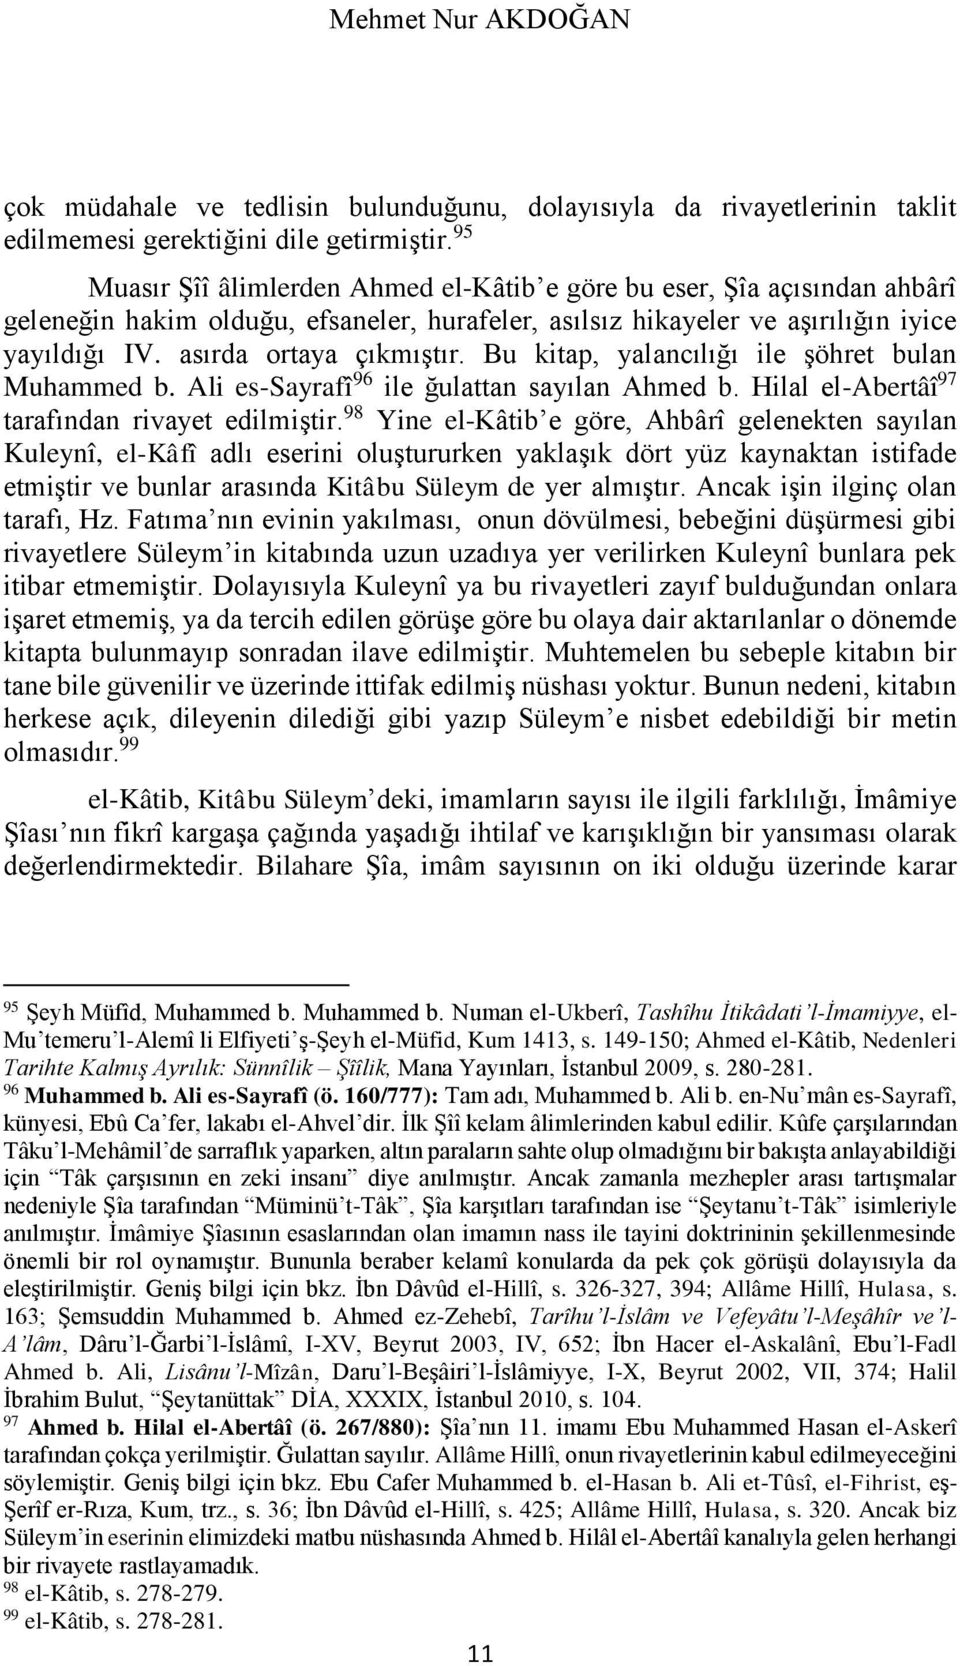 Bu kitap, yalancılığı ile şöhret bulan Muhammed b. Ali es-sayrafî 96 ile ğulattan sayılan Ahmed b. Hilal el-abertâî 97 tarafından rivayet edilmiştir.